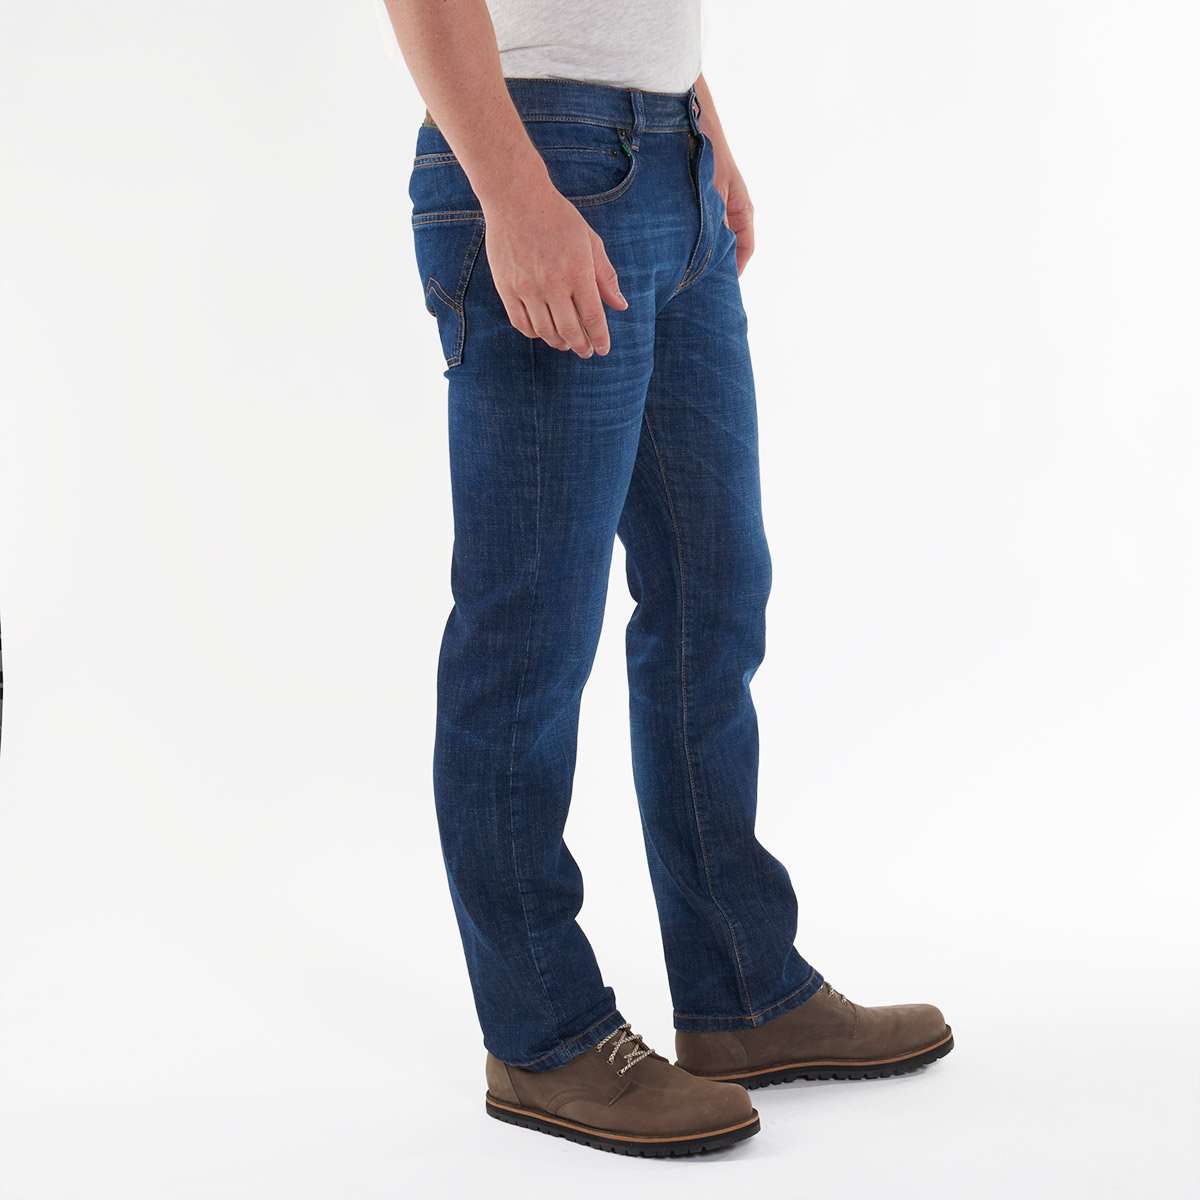 Ein nachhaltiges Produktfoto einer geraden Jeans für Herren, produziert von Fairjeans aus Bio-Baumwolle und mit einem leichten Used-Look versehen.